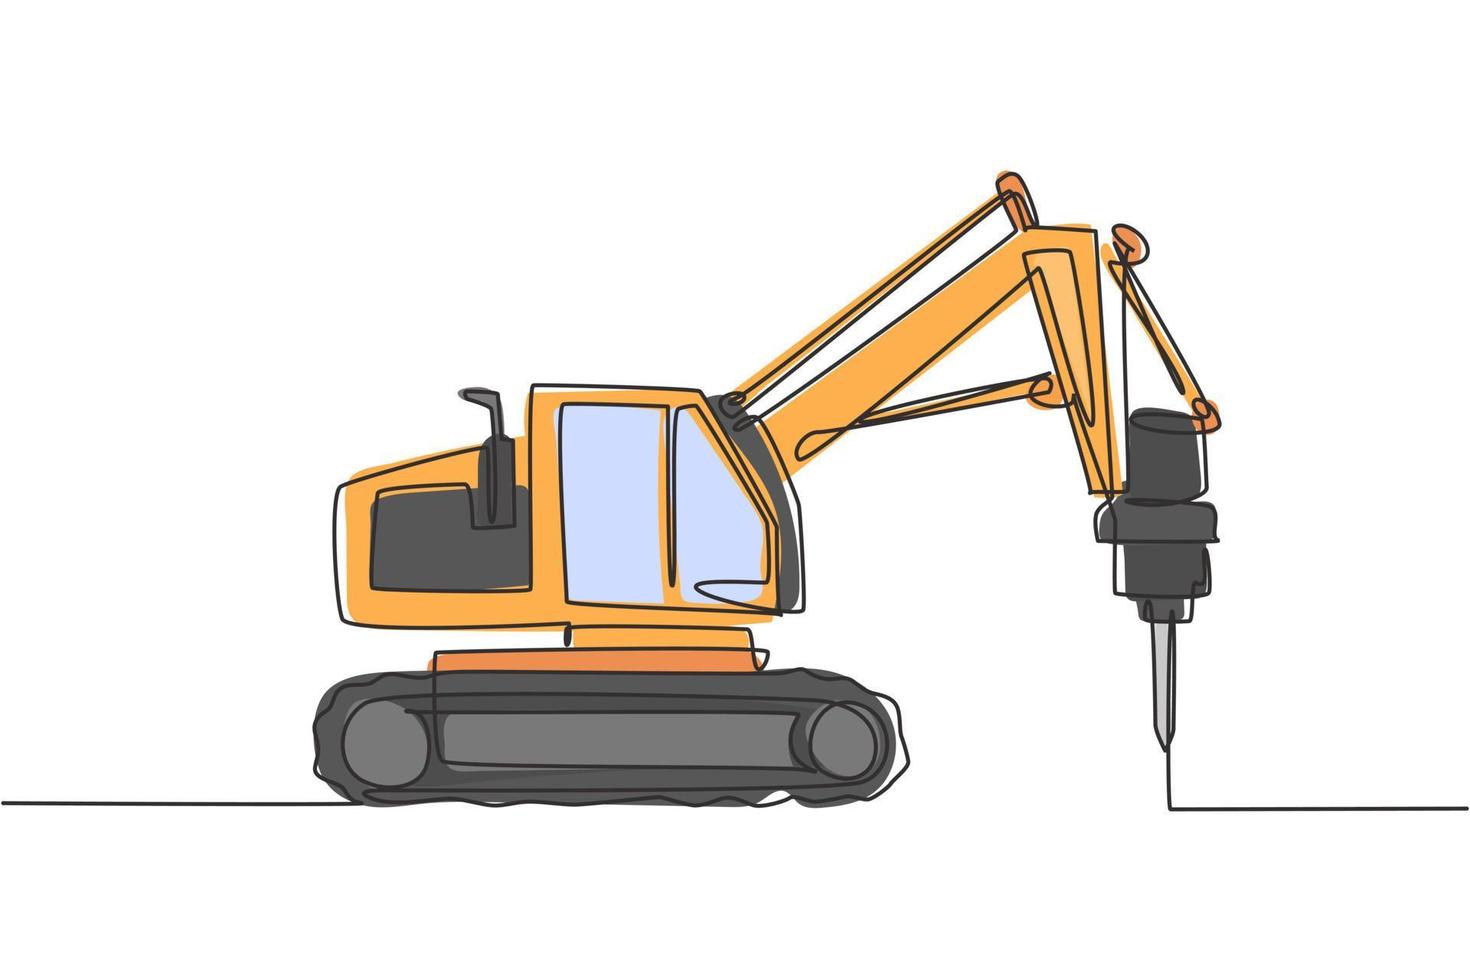 un dibujo de una sola línea del perforador de camión para la ilustración de vector de perforación de tierra de suelo, vehículo comercial. concepto de construcción de máquinas excavadoras pesadas. diseño gráfico de dibujo de línea continua moderna